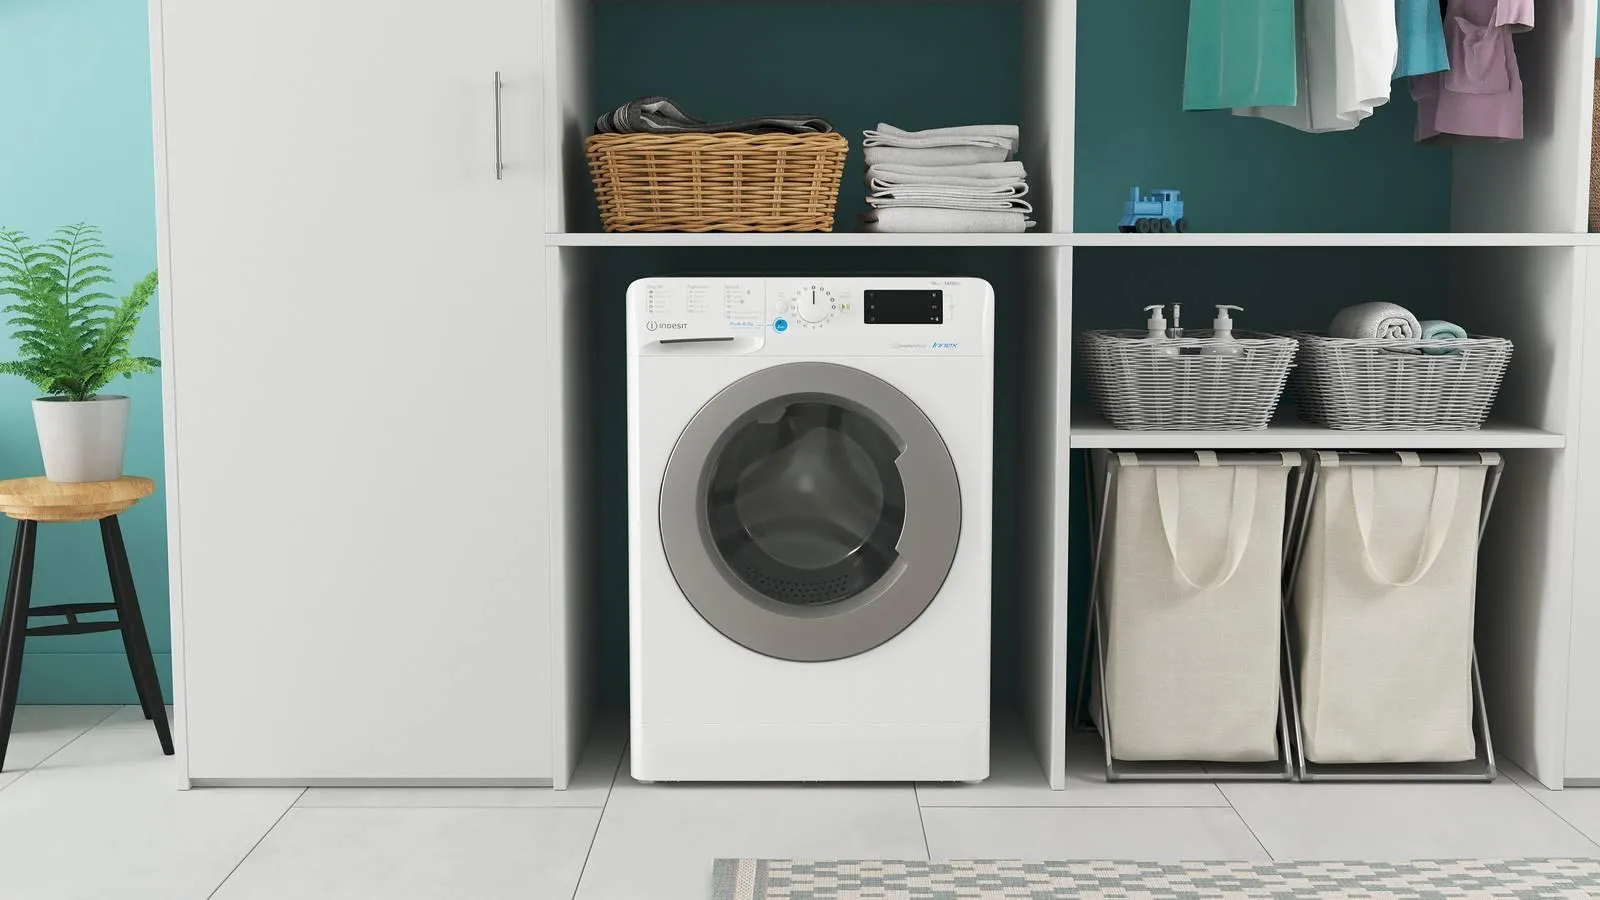 La migliore lavatrice in base alle esigenze: 15 modelli e la guida alla  scelta - Cose di Casa